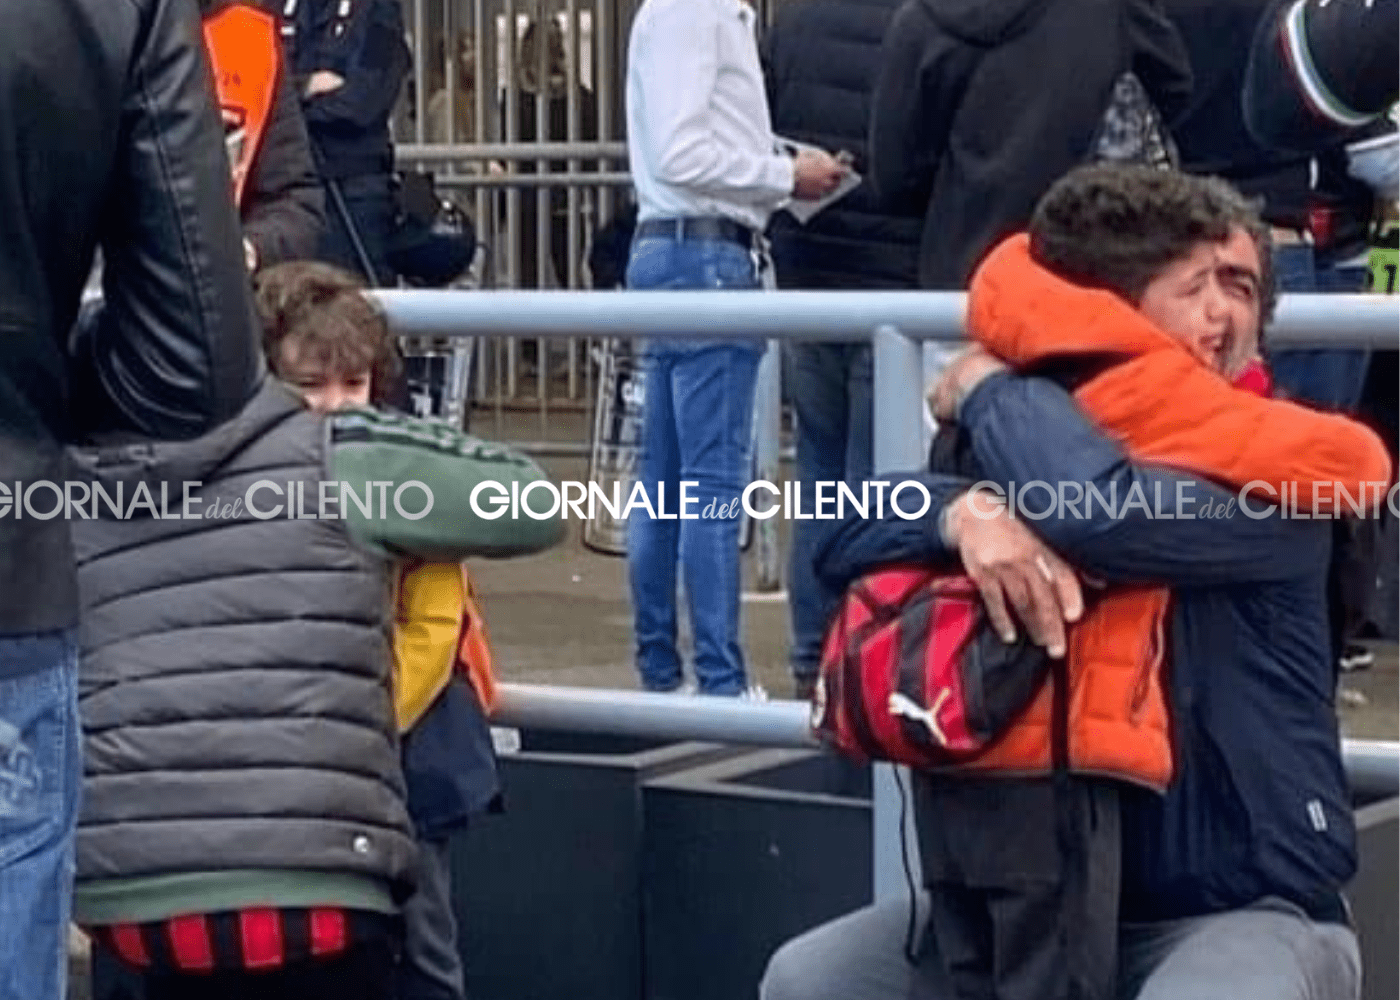 Bambini cilentani in lacrime, i biglietti per Milan-Inter erano falsi